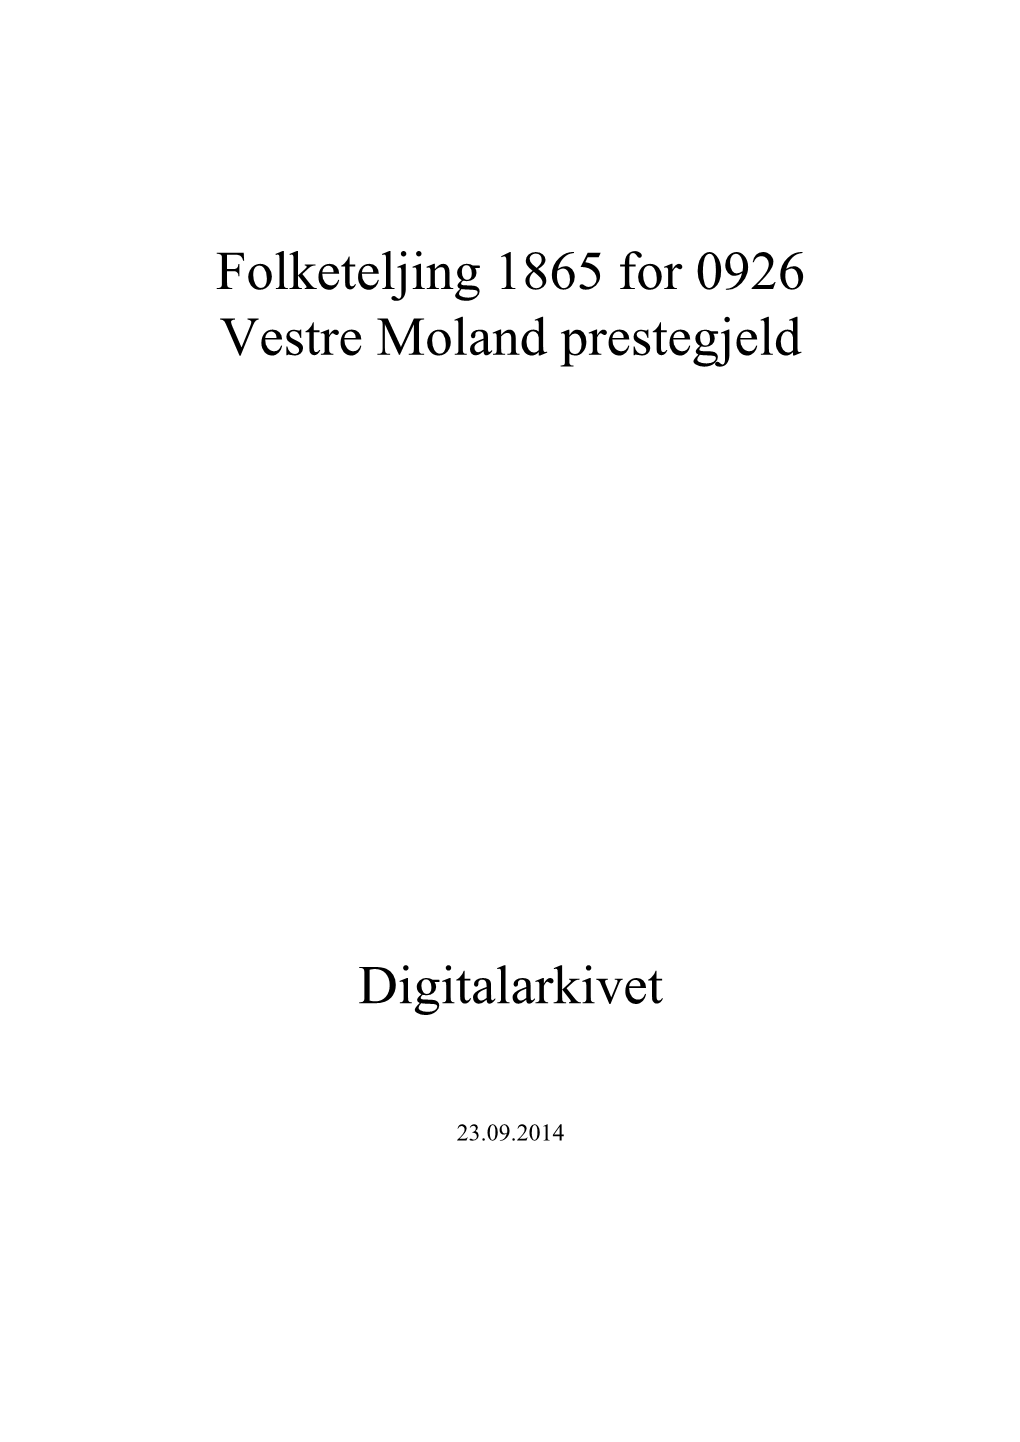 Folketeljing 1865 for 0926 Vestre Moland Prestegjeld Digitalarkivet